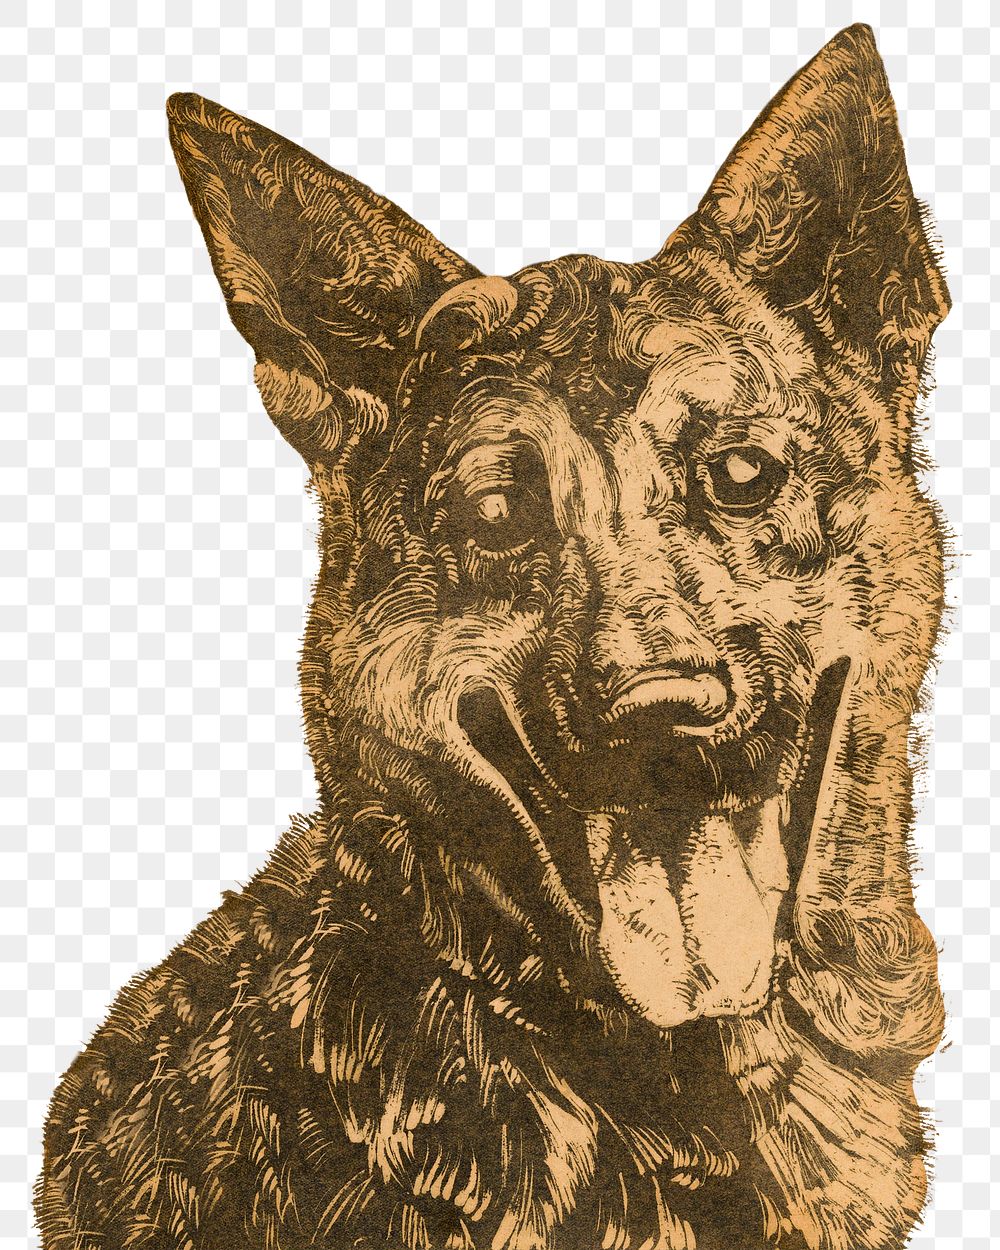 Png Dick Ket's dog sticker, pet vintage illustration, transparent background